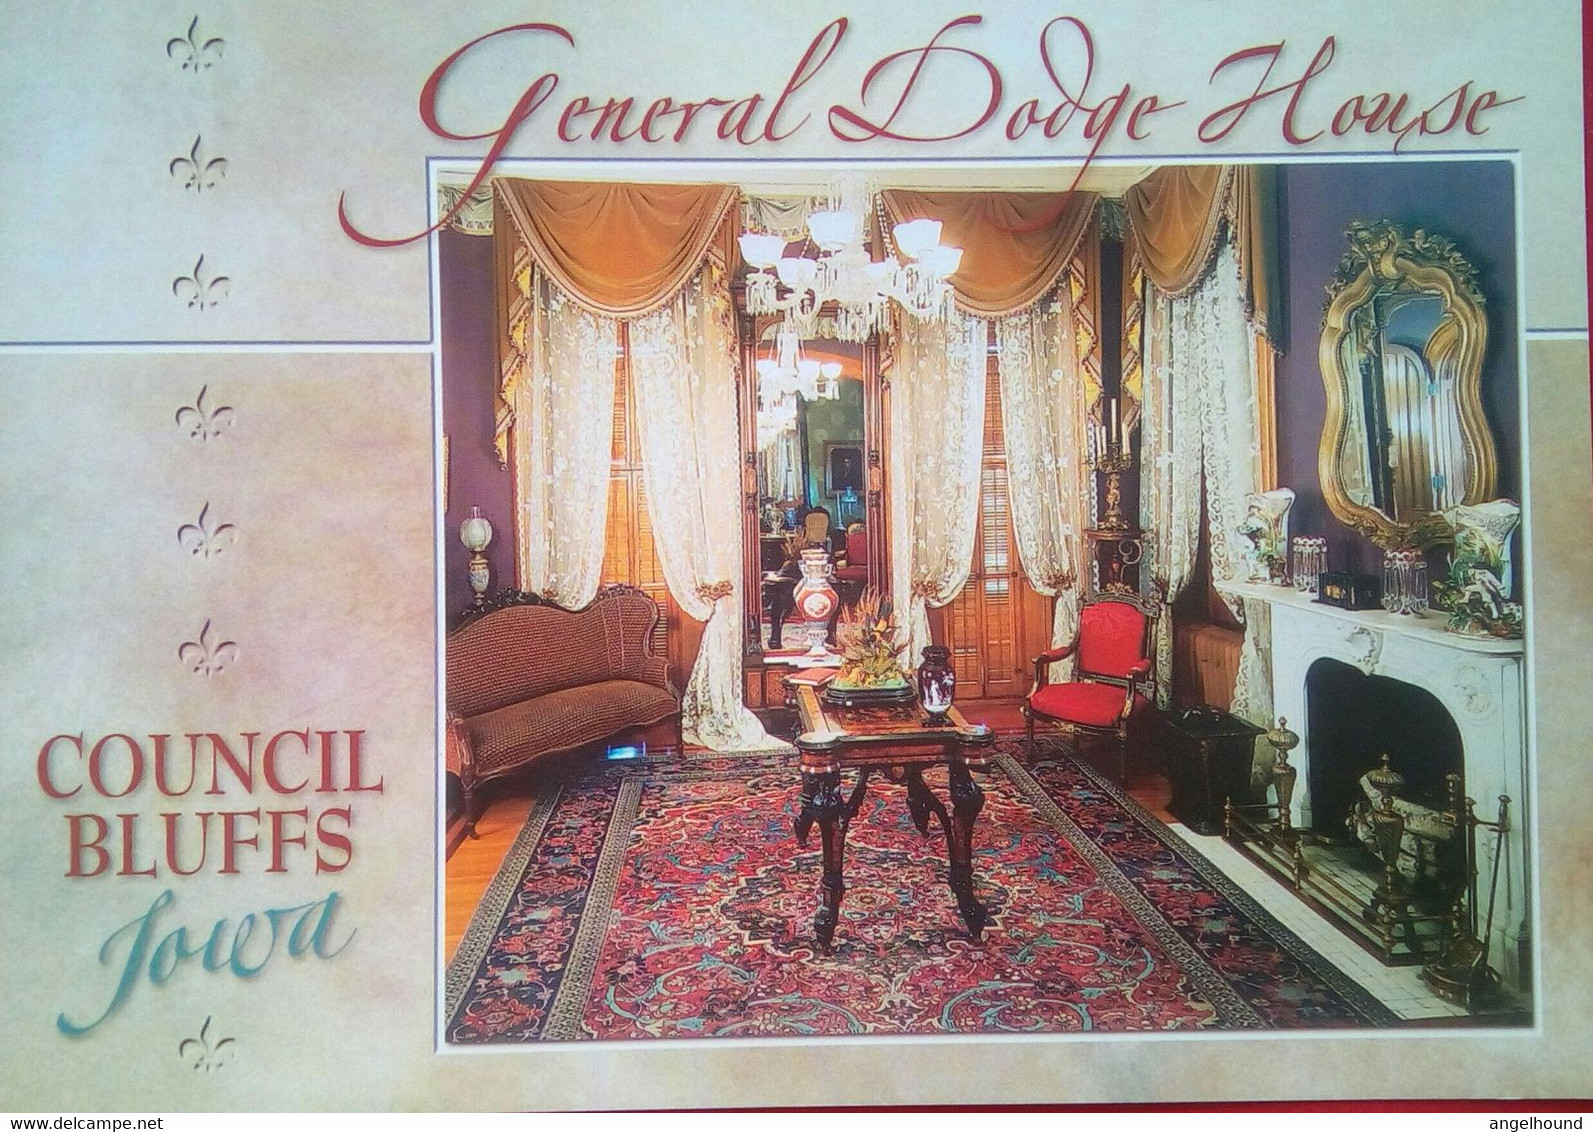 Gen Dodge House Front Parlor - Council Bluffs